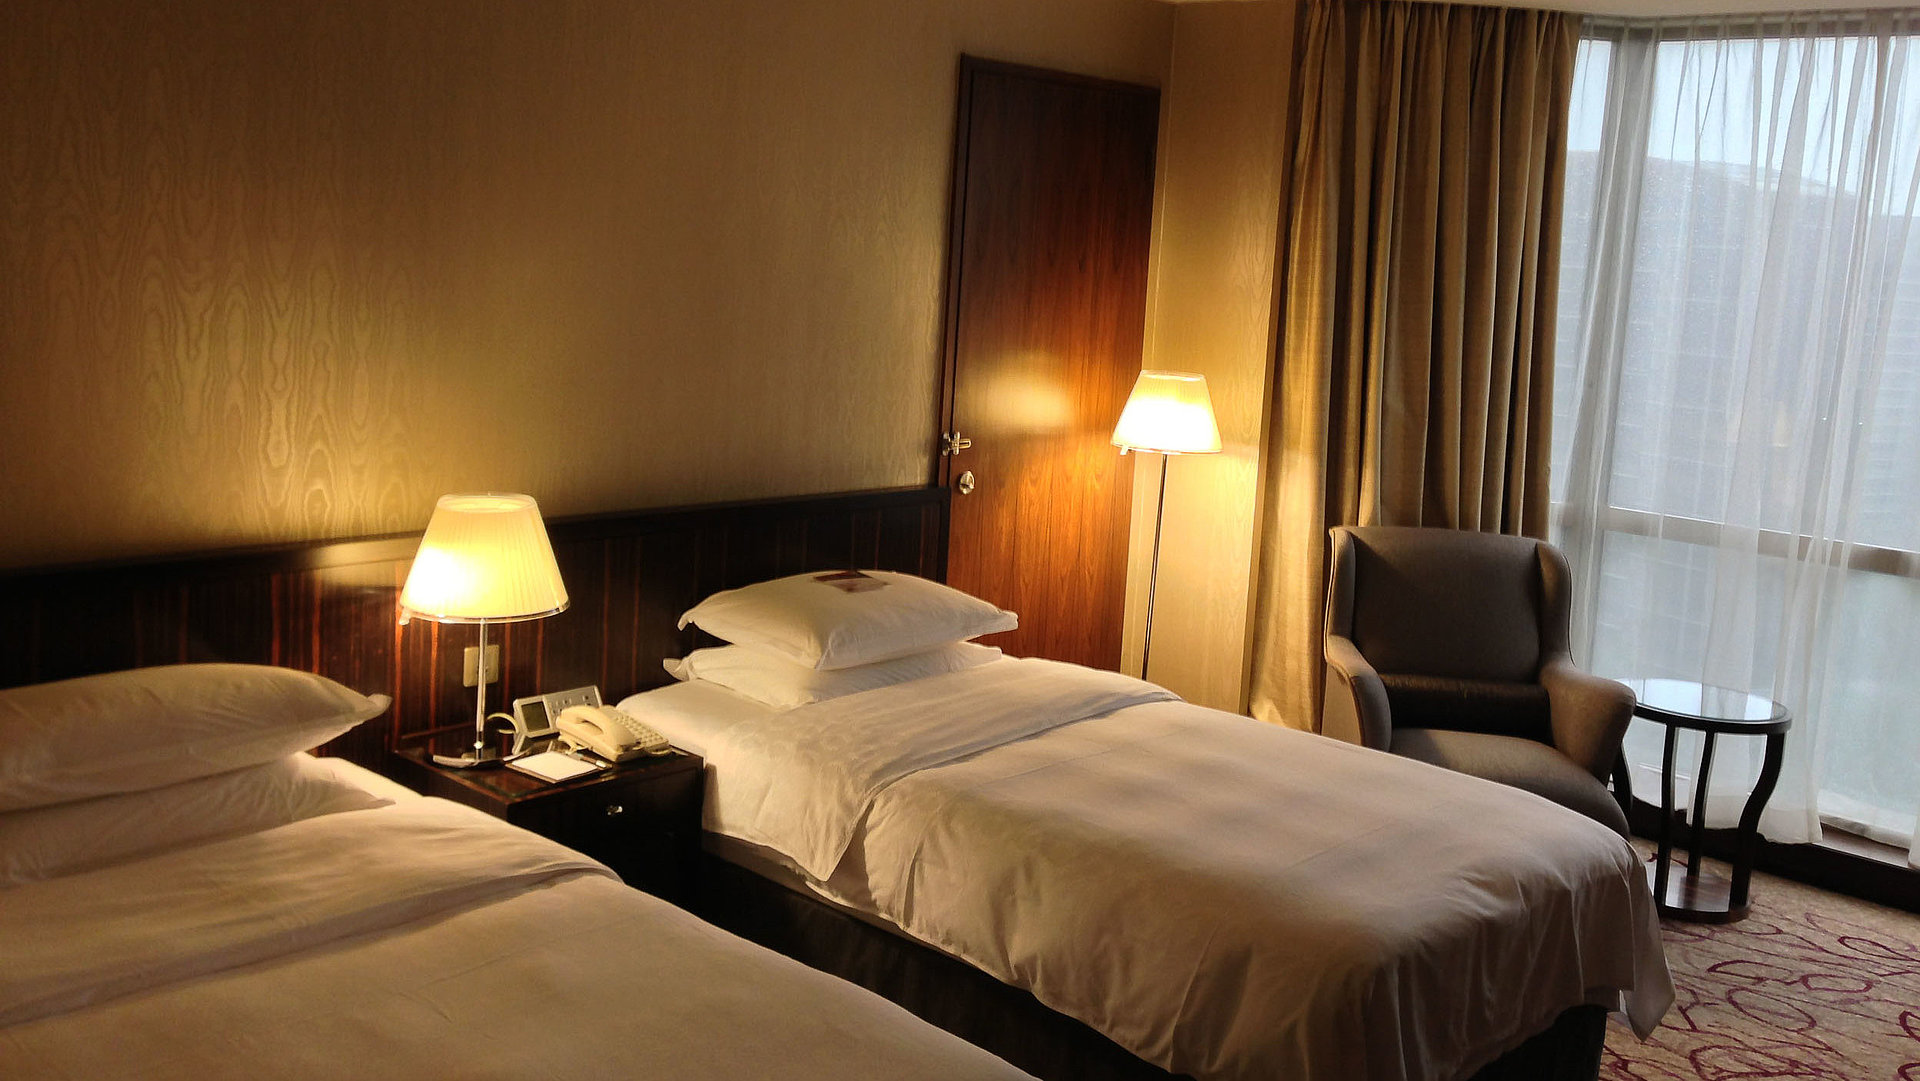 Übernachten Video in Oberbayern - sehr ordentliches Hotelzimmer mit zwei Betten, warmer Nachtlampe und Gardinen